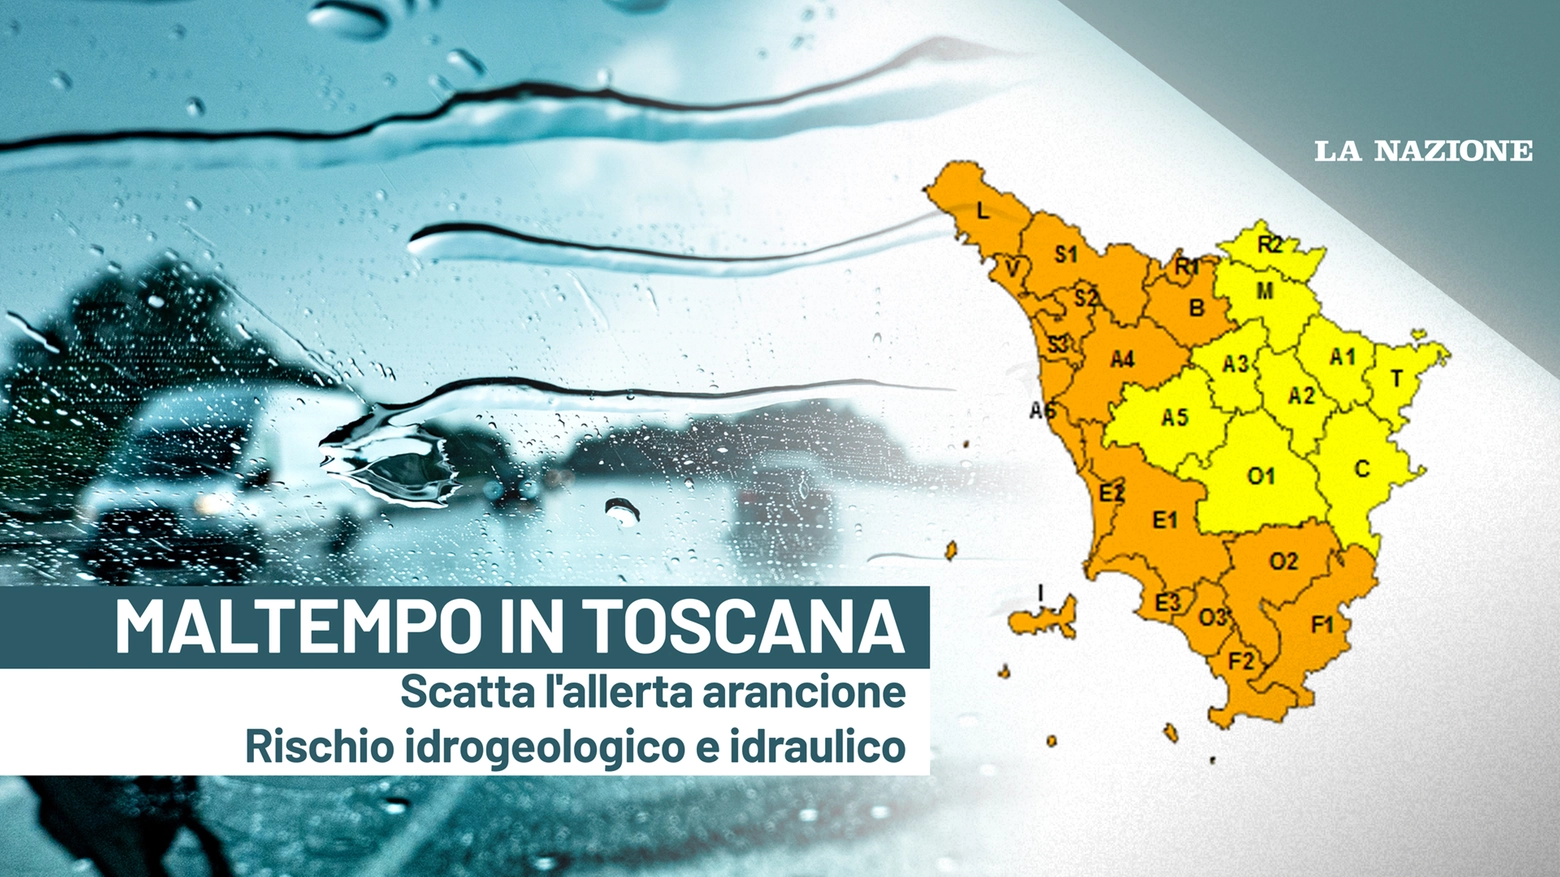 Maltempo in Toscana, scatta l'allerta arancione per rischio idrogeologico e idraulico